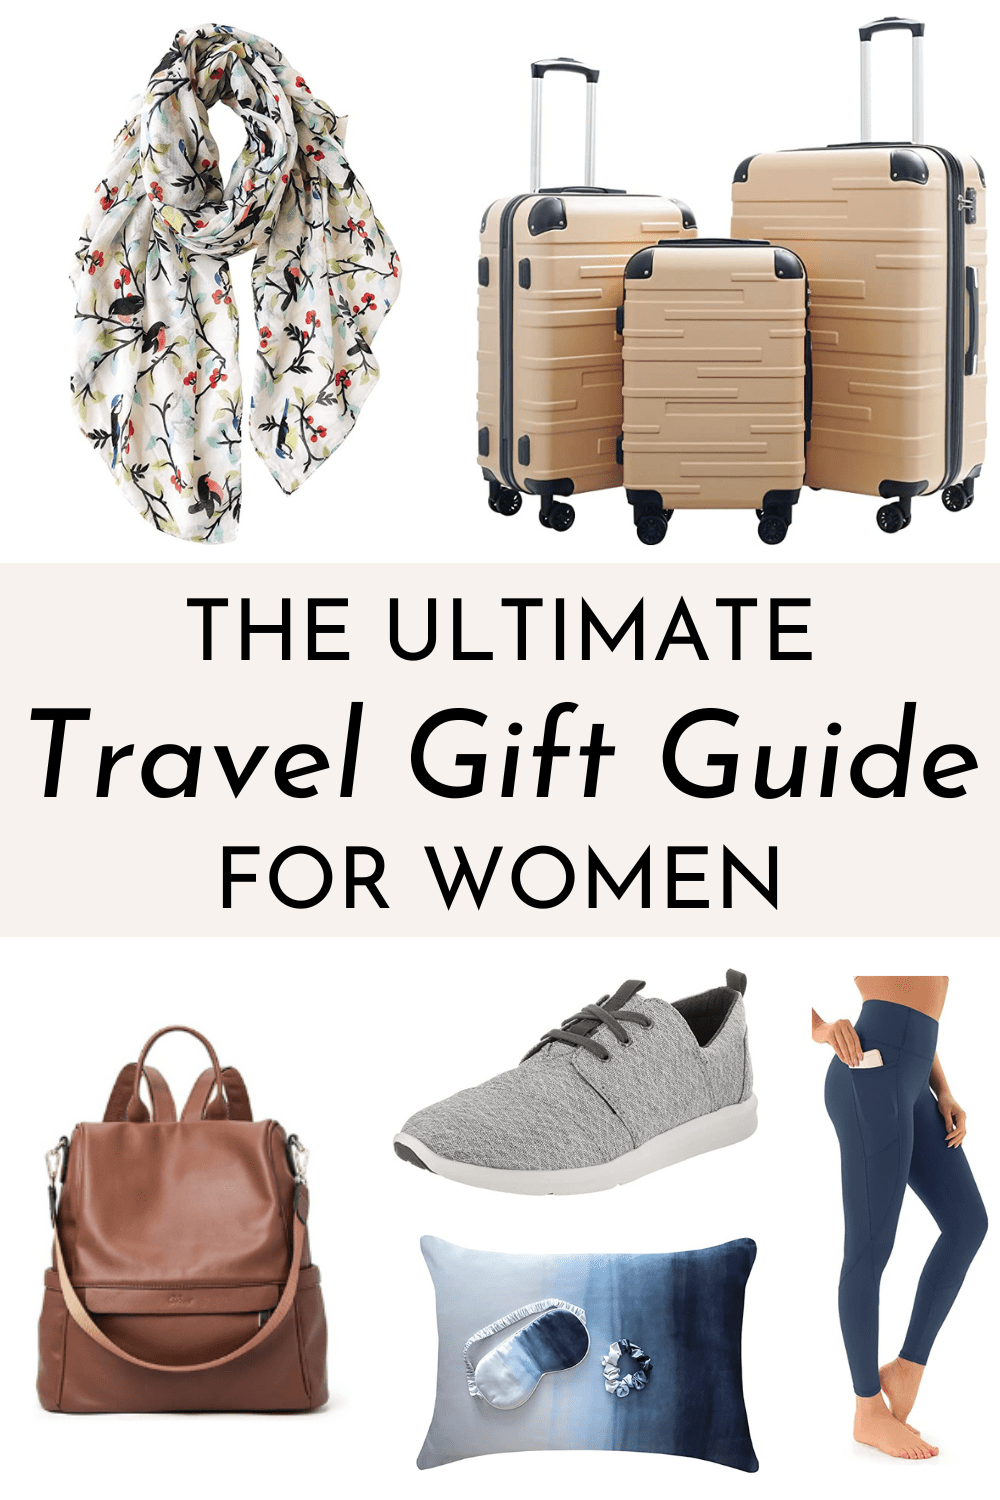 Travel gift guide for women